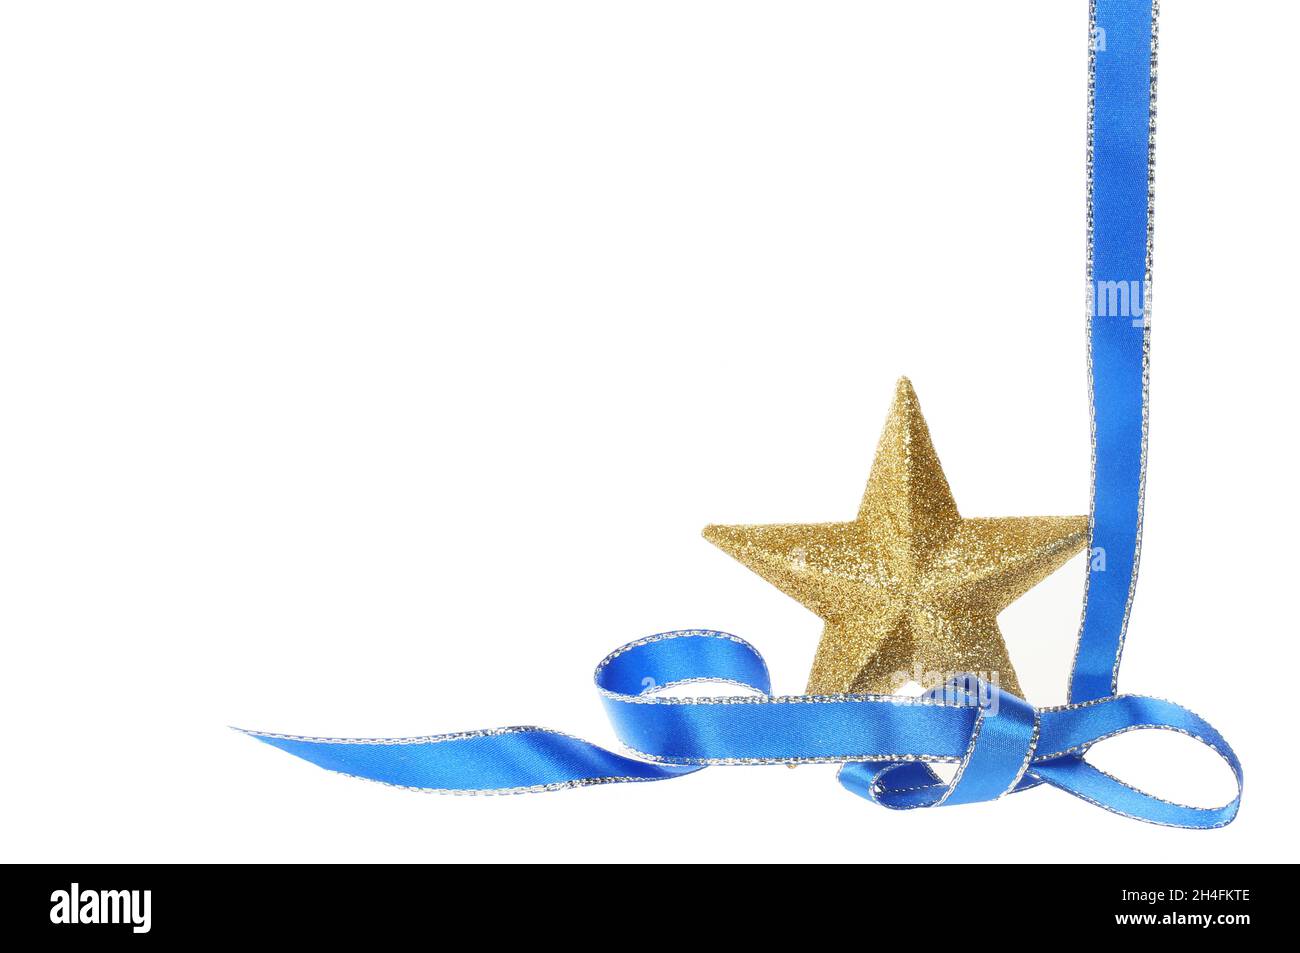 Décoration de Noël, étoile dorée scintillante drapée d'un ruban bleu et argent, isolée du blanc Banque D'Images